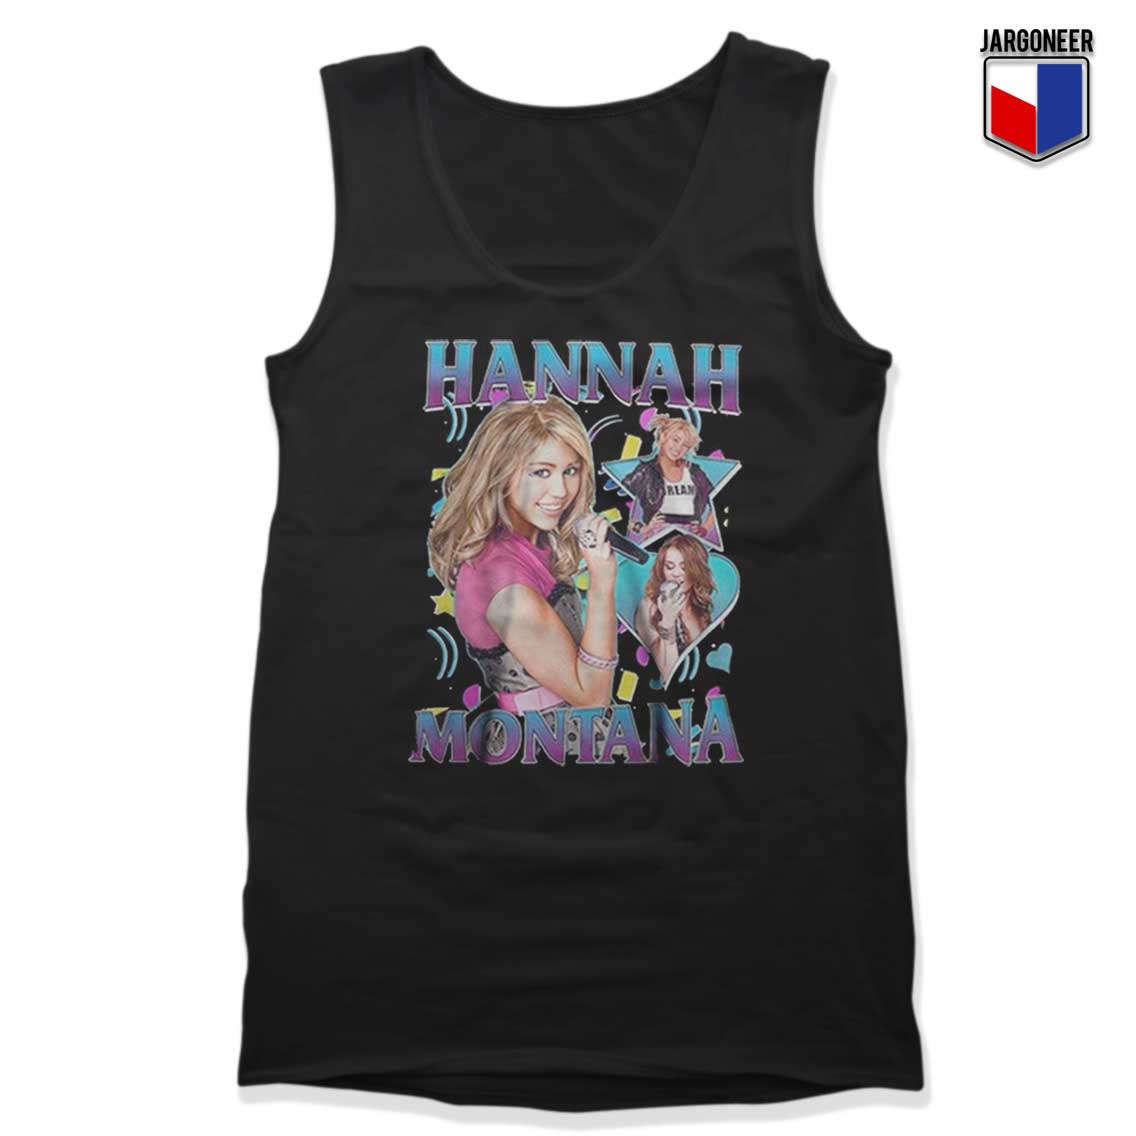 Hannah Montana Tank Top - Shop Unique Graphic Cool Shirt Designs